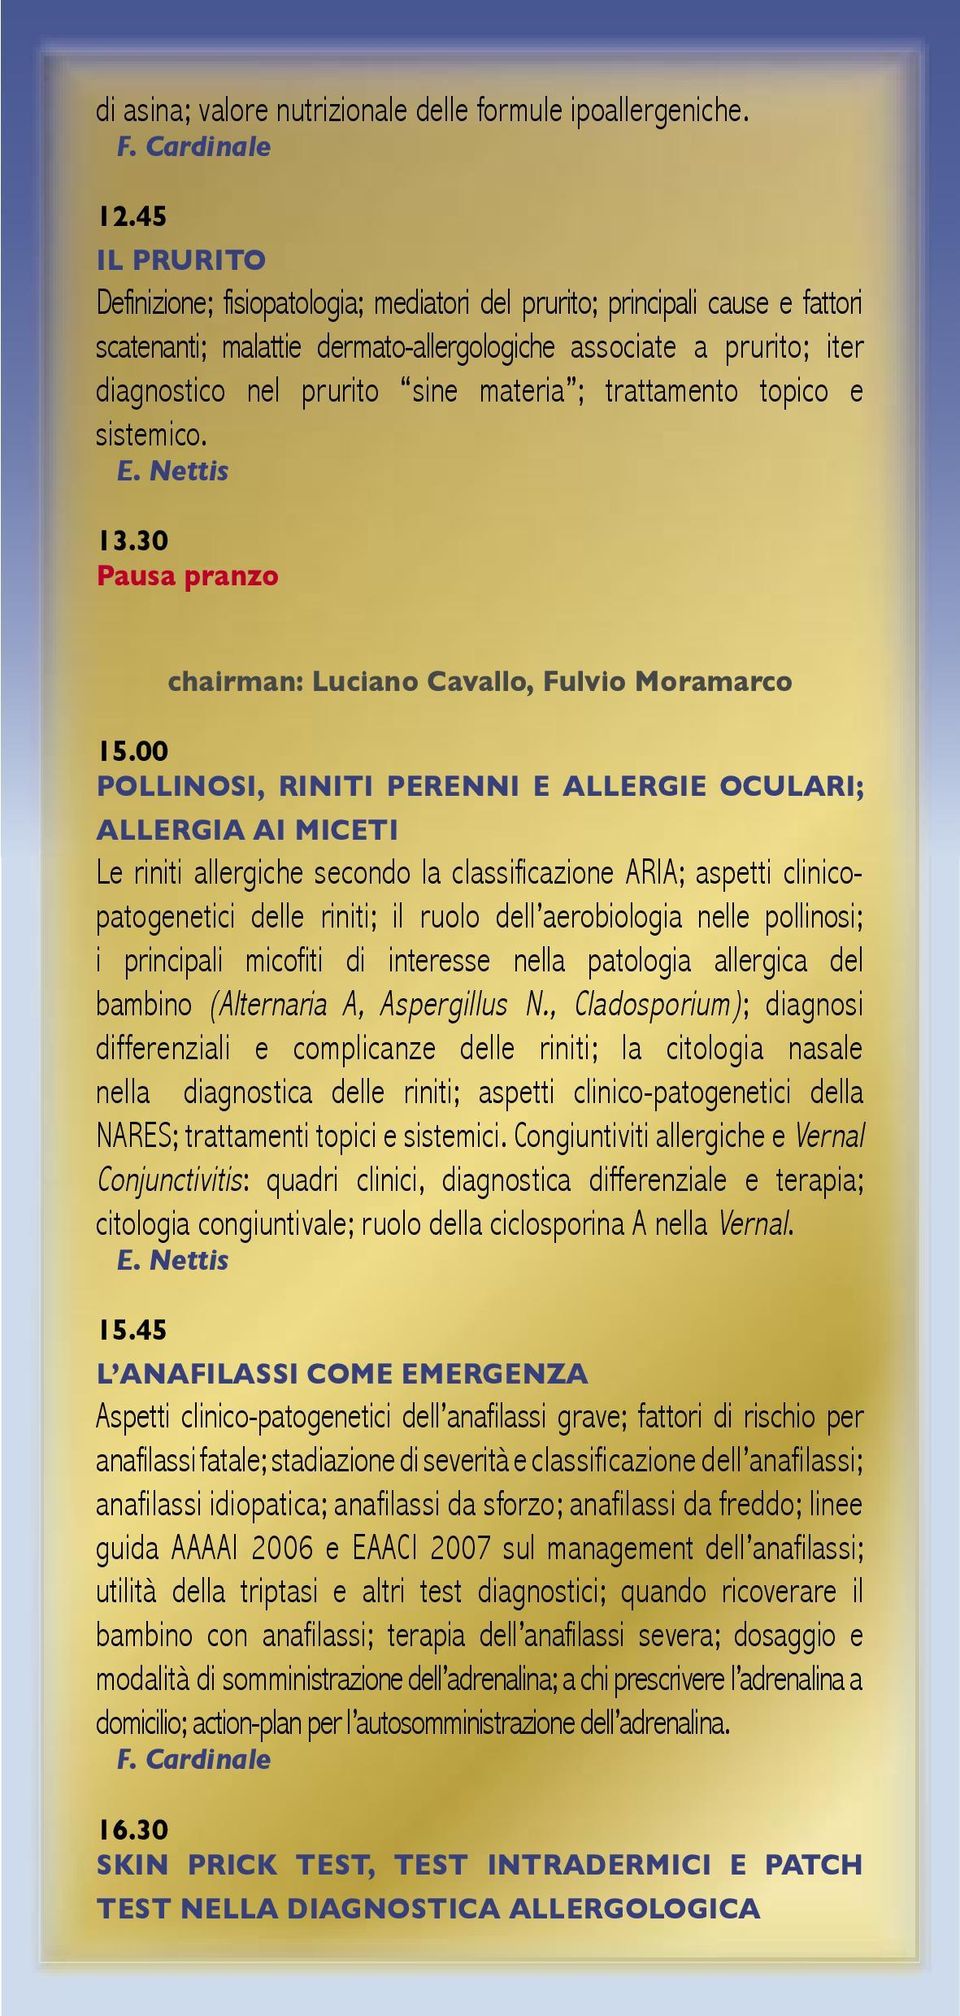 ; trattamento topico e sistemico. 13.30 Pausa pranzo chairman: Luciano Cavallo, Fulvio Moramarco 15.